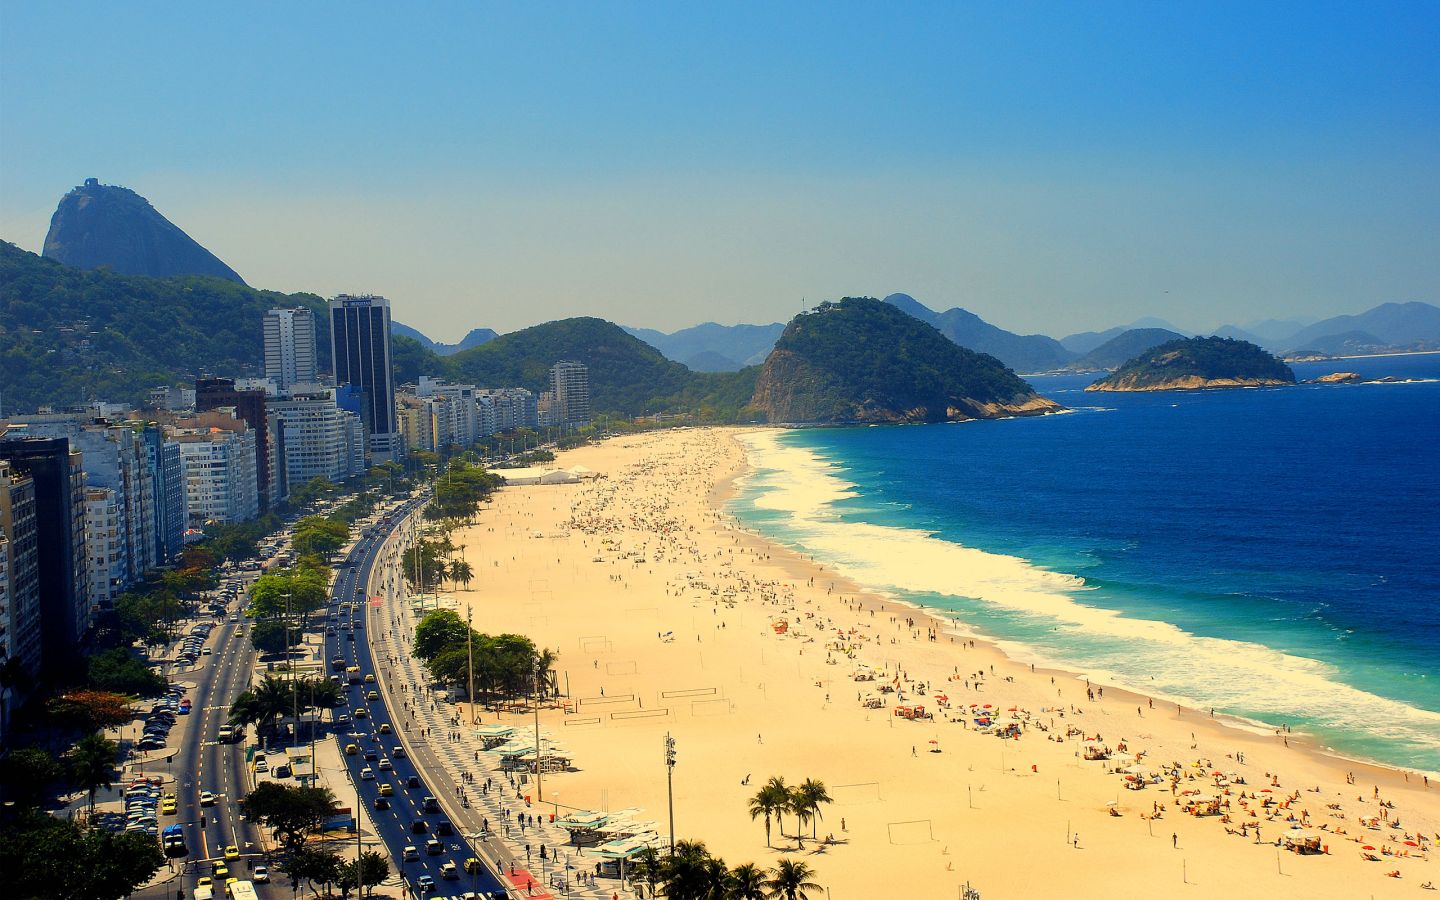 http://moipermoi.files.wordpress.com/2012/05/copacabana-beach-rio-de-janeiro-1440x9001.jpg